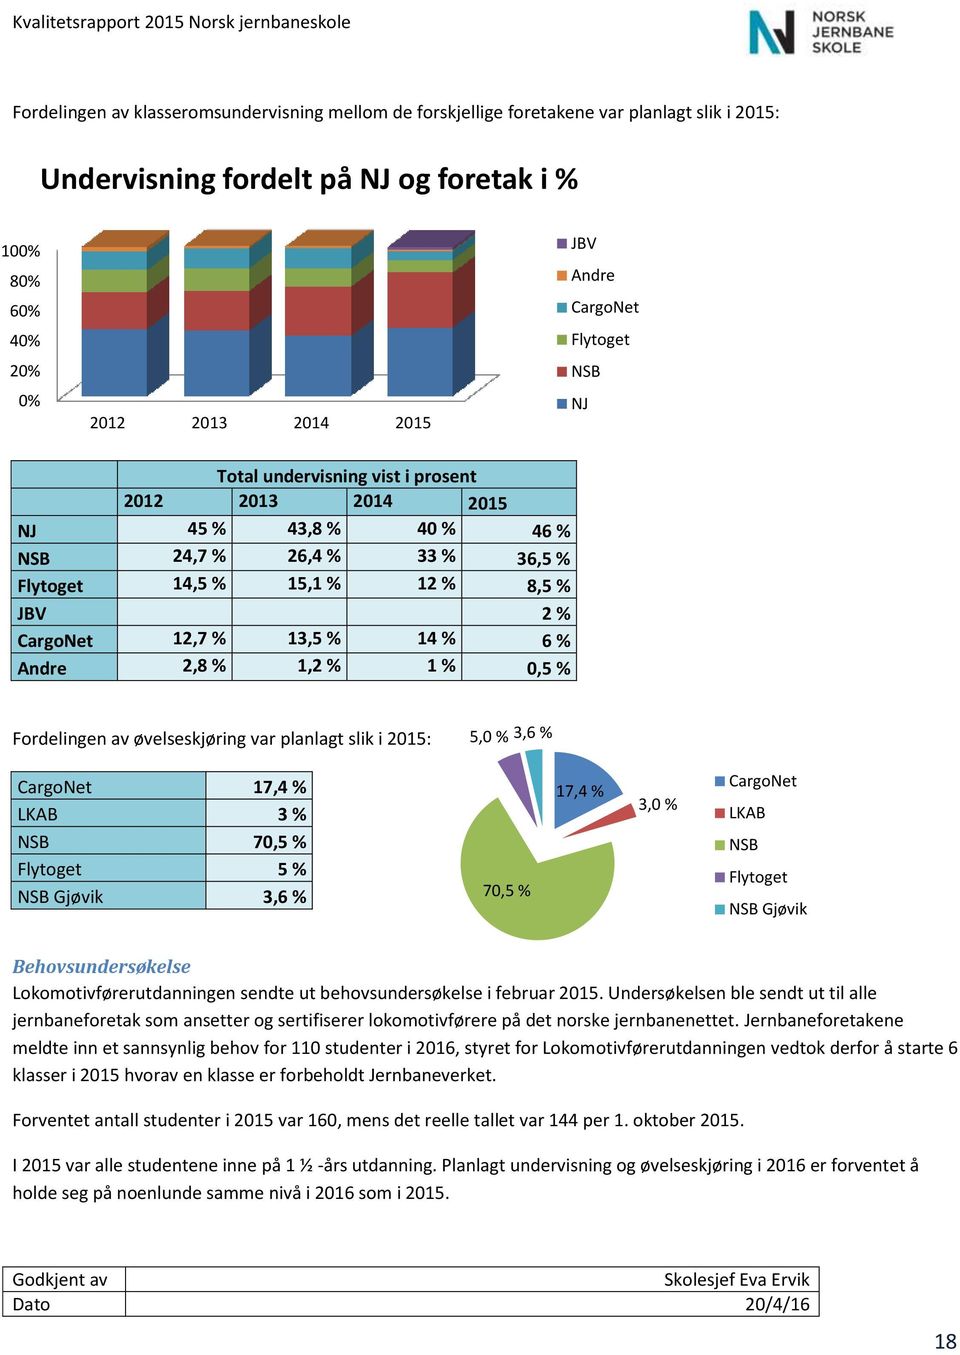 14 % 6 % Andre 2,8 % 1,2 % 1 % 0,5 % Fordelingen av øvelseskjøring var planlagt slik i 2015: 5,0 % 3,6 % CargoNet 17,4 % LKAB 3 % NSB 70,5 % Flytoget 5 % NSB Gjøvik 3,6 % 70,5 % 17,4 % 3,0 % CargoNet